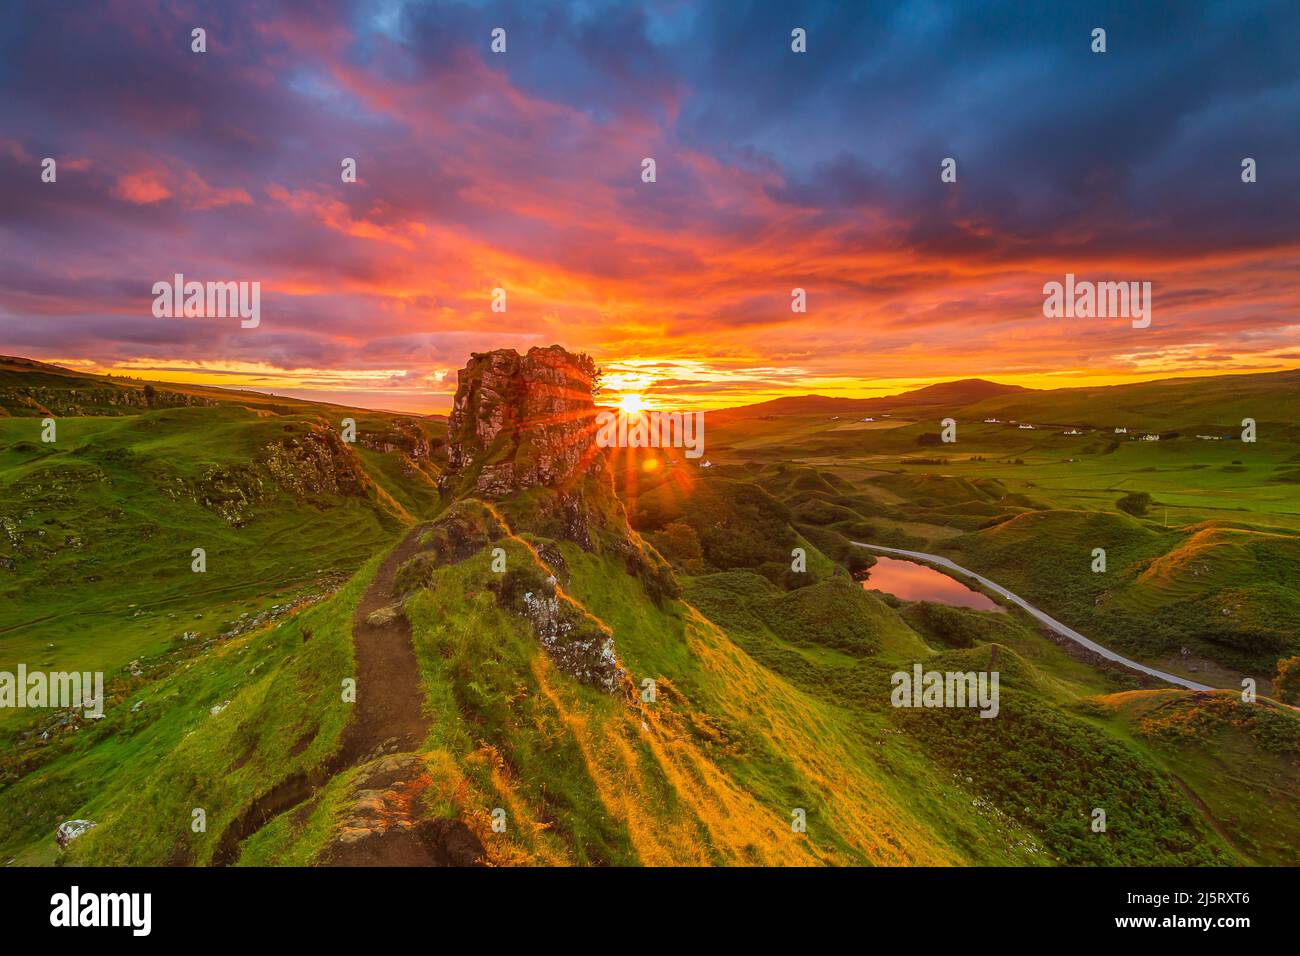 Tramonto con stella del sole in Scozia sull'isola di Skye. Paesaggio con rocce Castello Ewen in estate. Giallo arancio rosso cielo con le nuvole. Strada sabbiosa Foto Stock